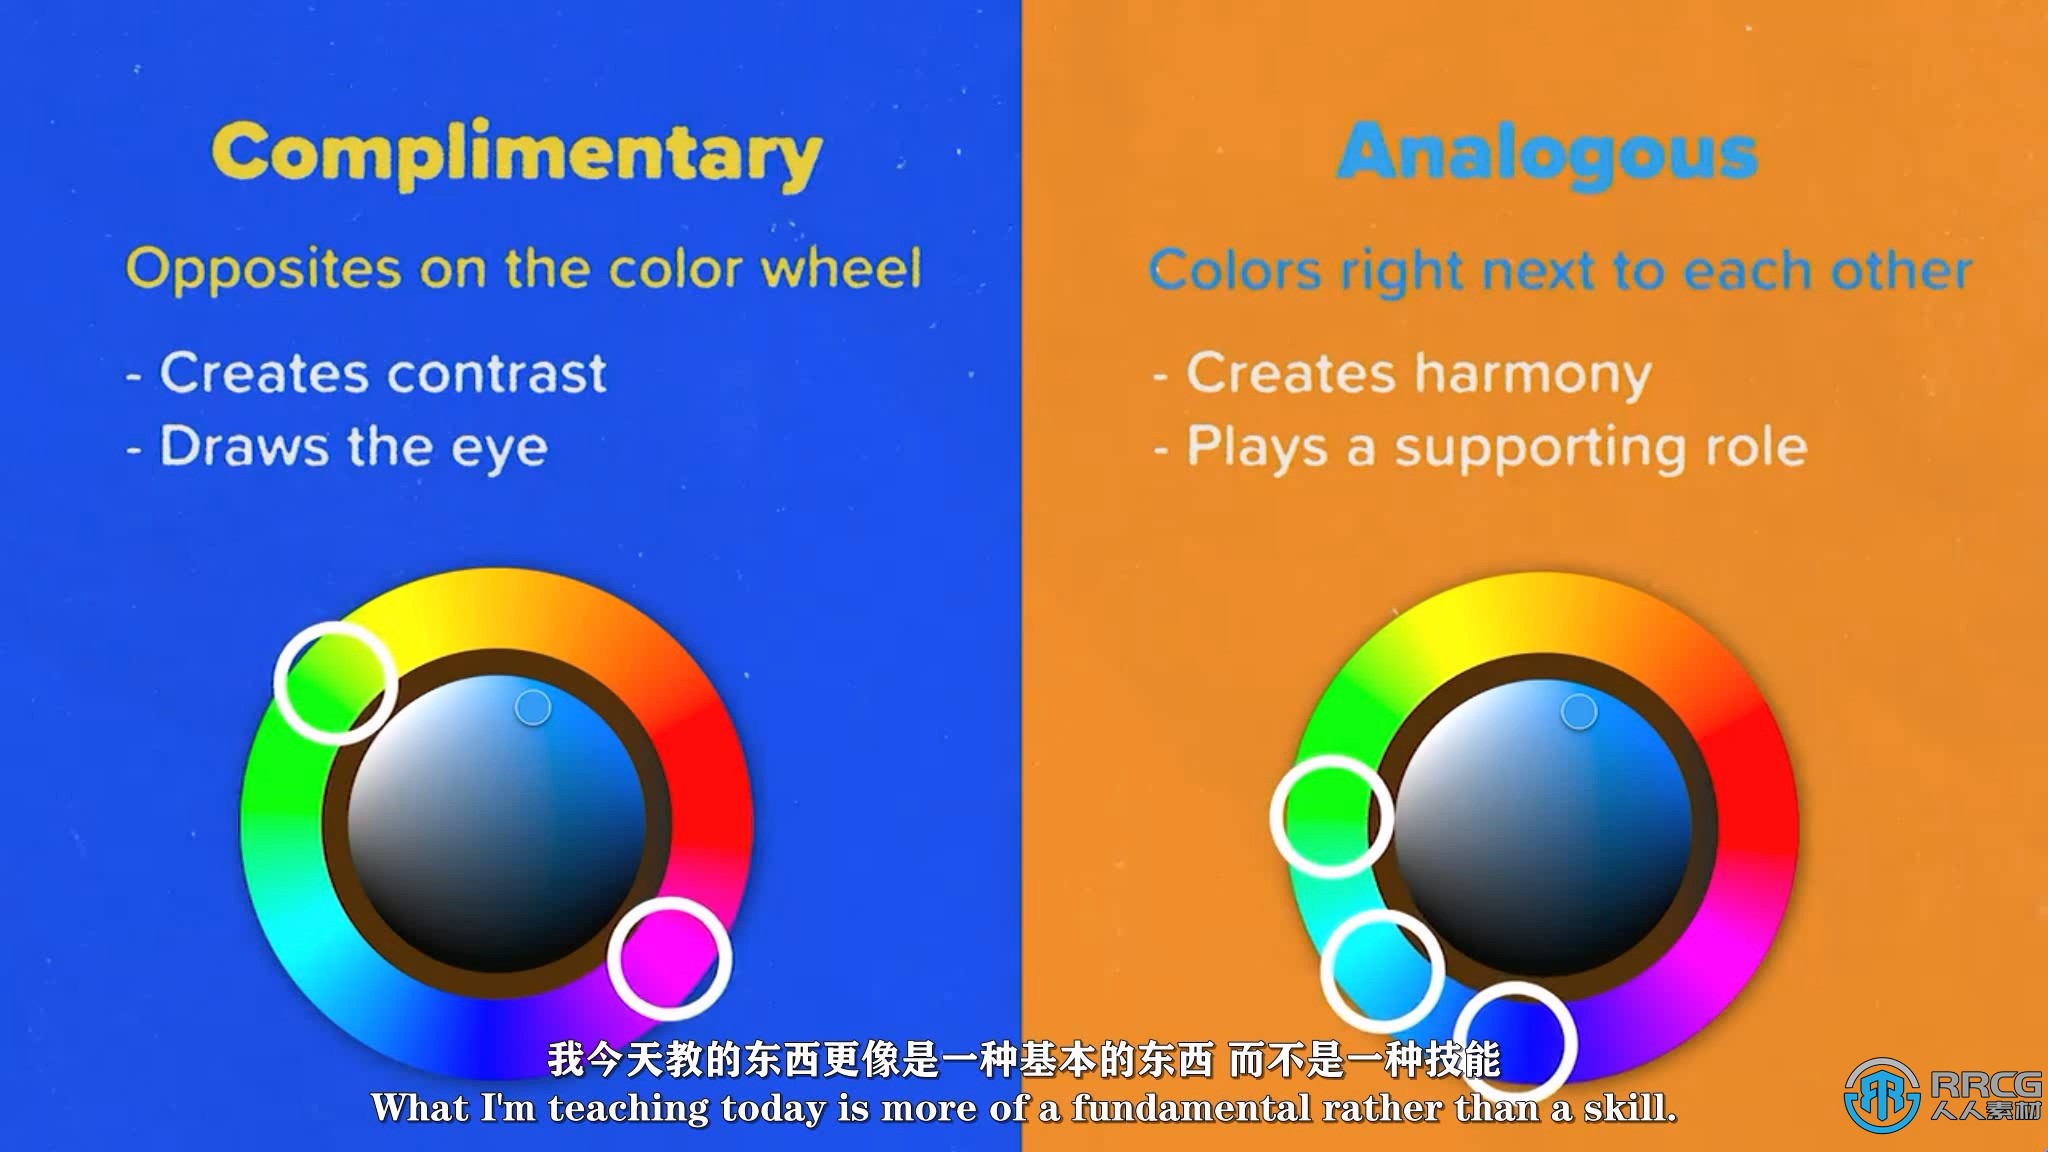 【中文字幕】Procreate丰富色彩运用技术数字插图视频教程